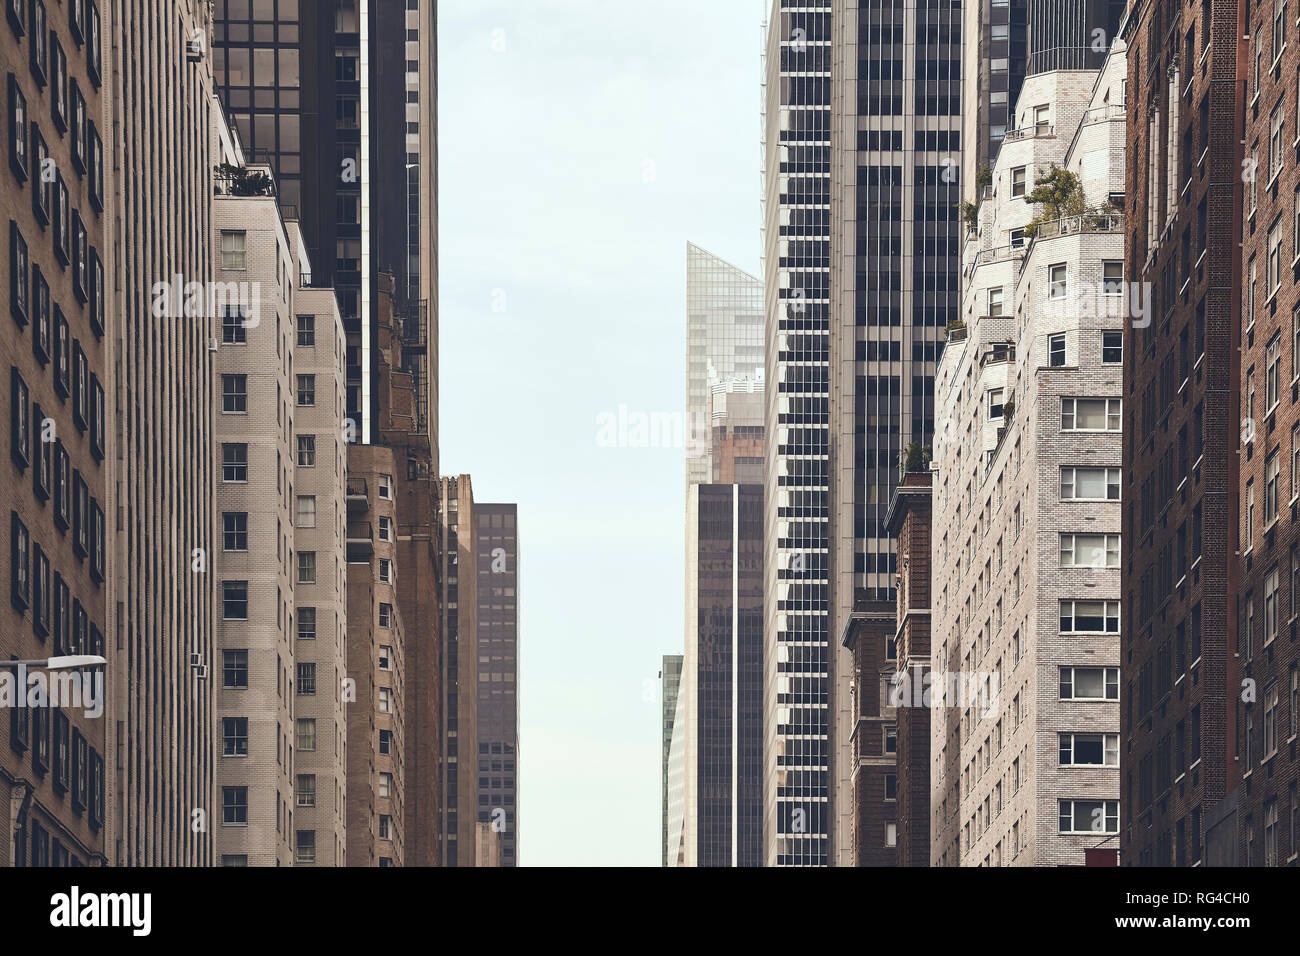 Canyon urbain dans la ville de New York, aux tons couleur rétro photo, USA. Banque D'Images